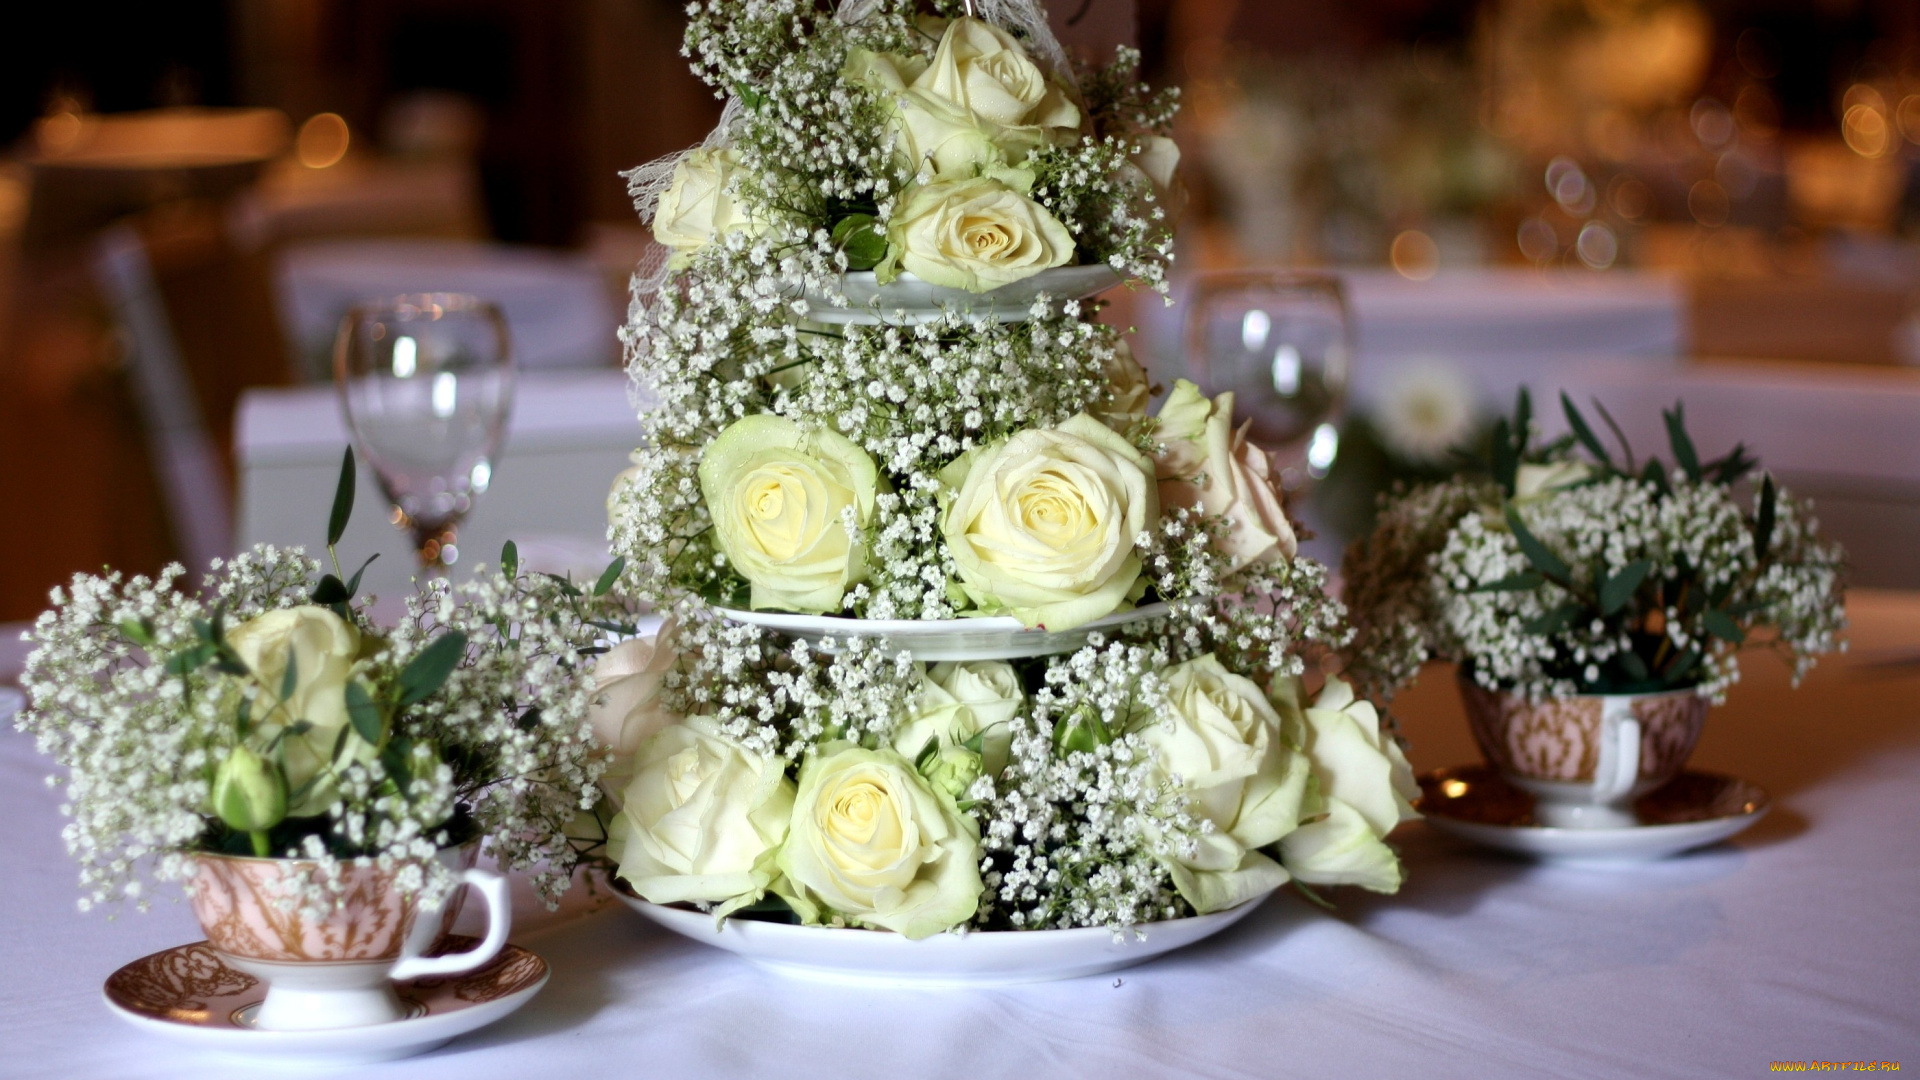 цветы, букеты, композиции, тарелки, розы, посуда, свадьба